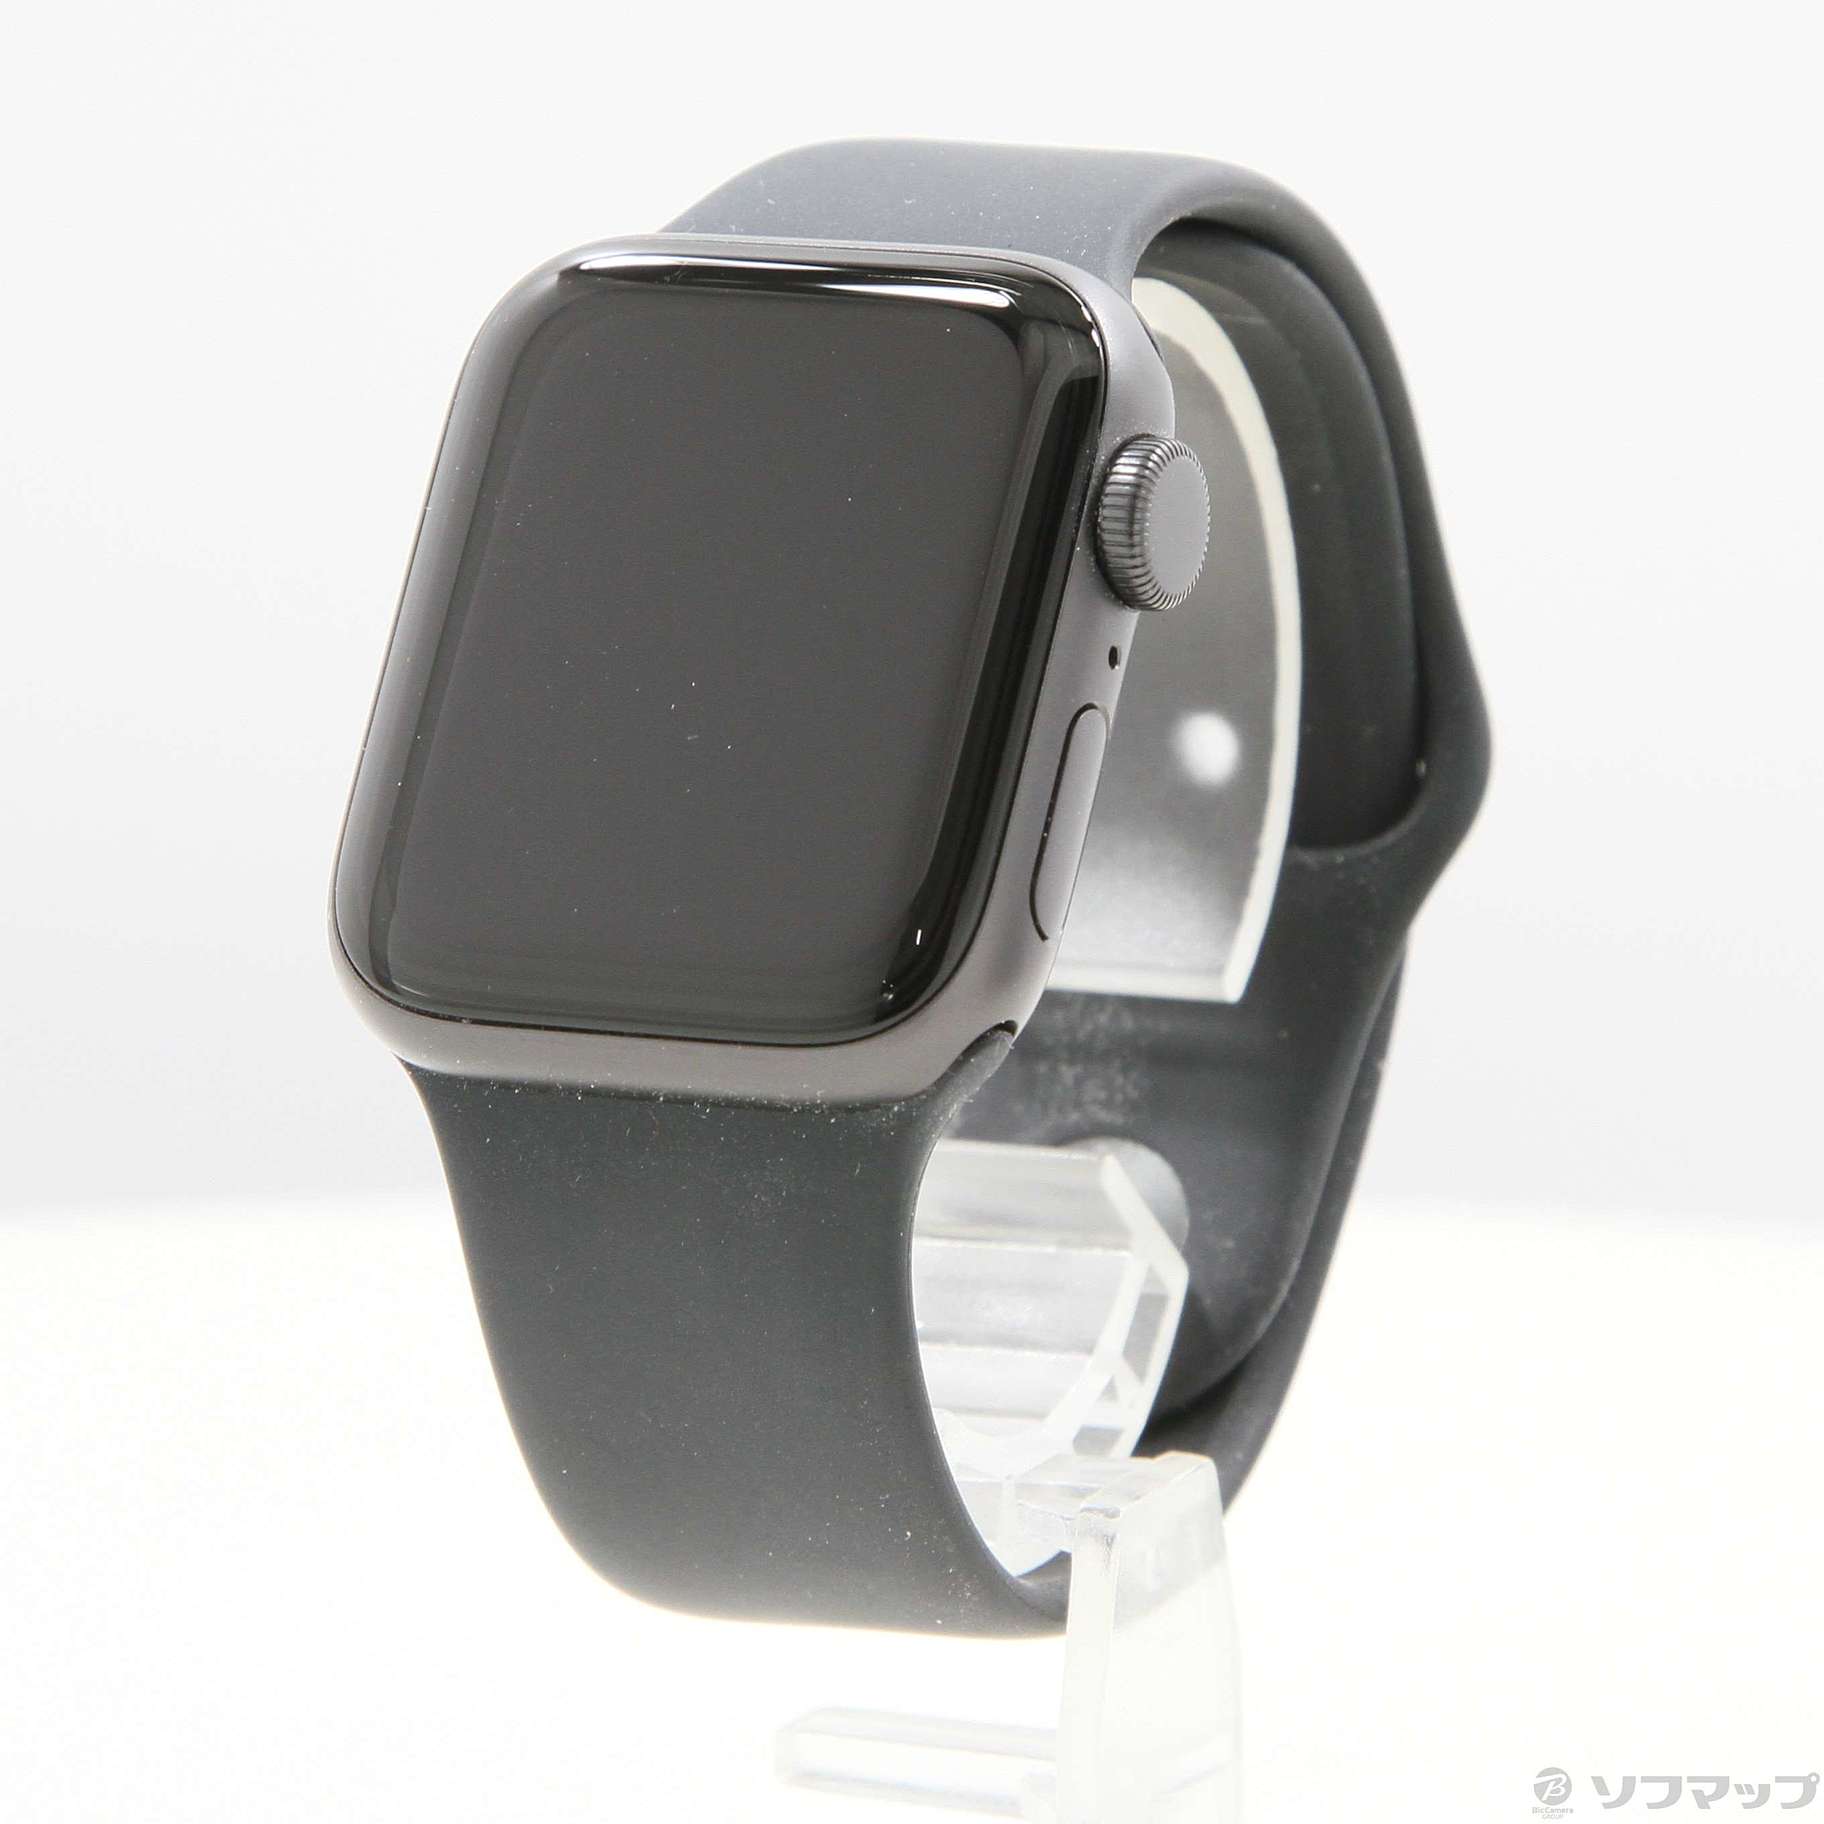 Apple Watch SE 第1世代 GPS 40mm スペースグレイアルミニウムケース ブラックスポーツバンド